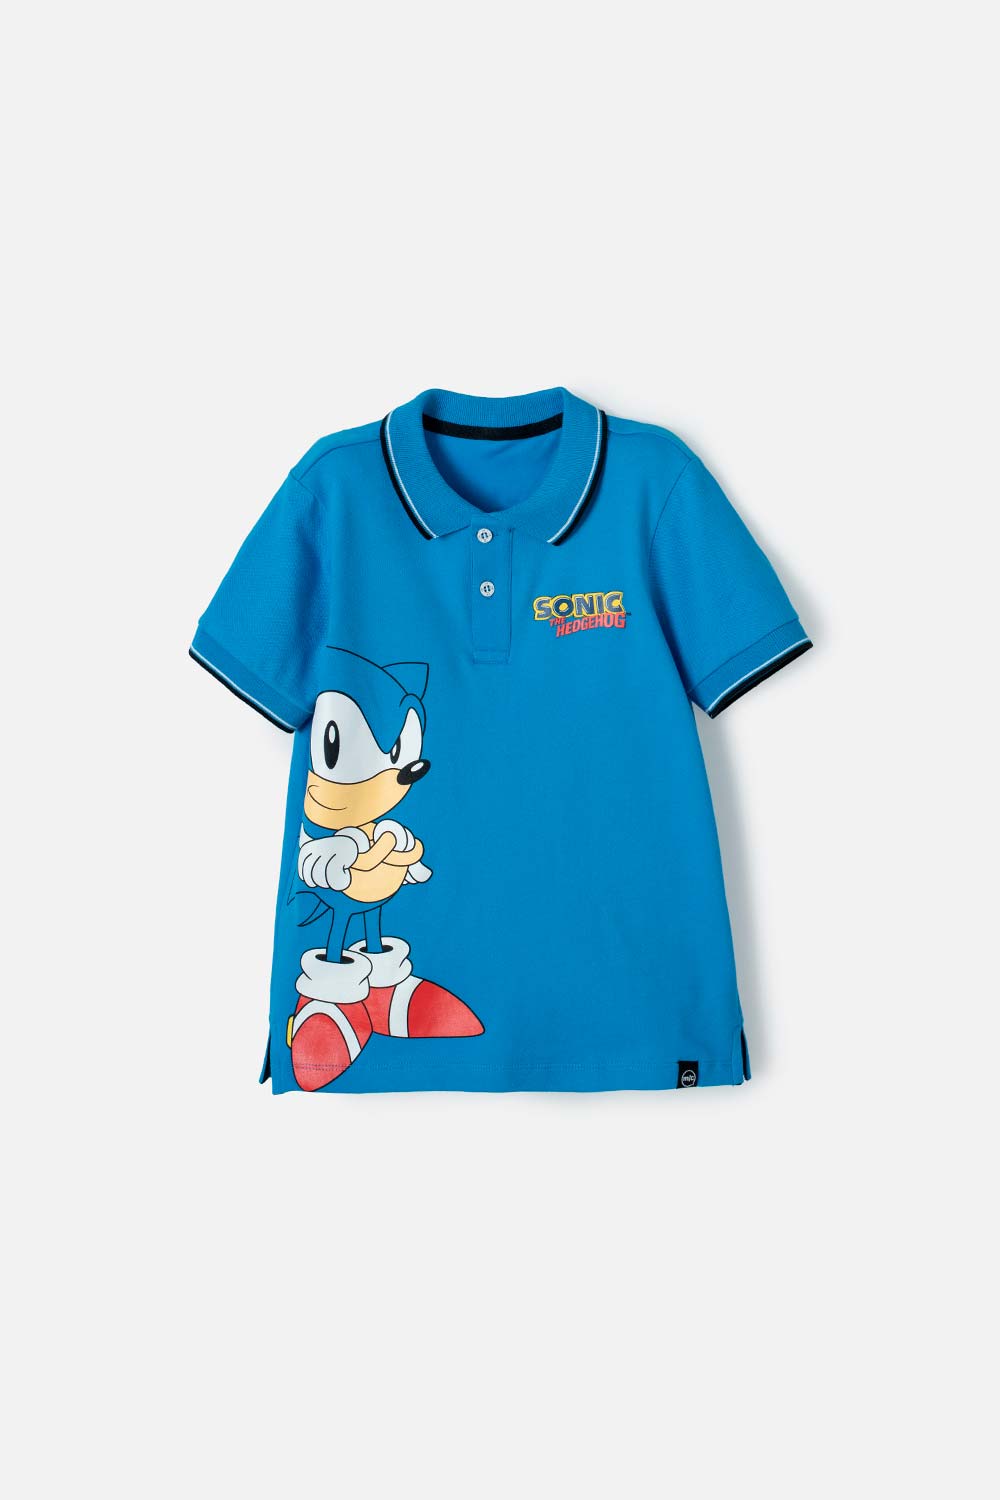 Camiseta tipo polo Sonic azul para niño 6-0